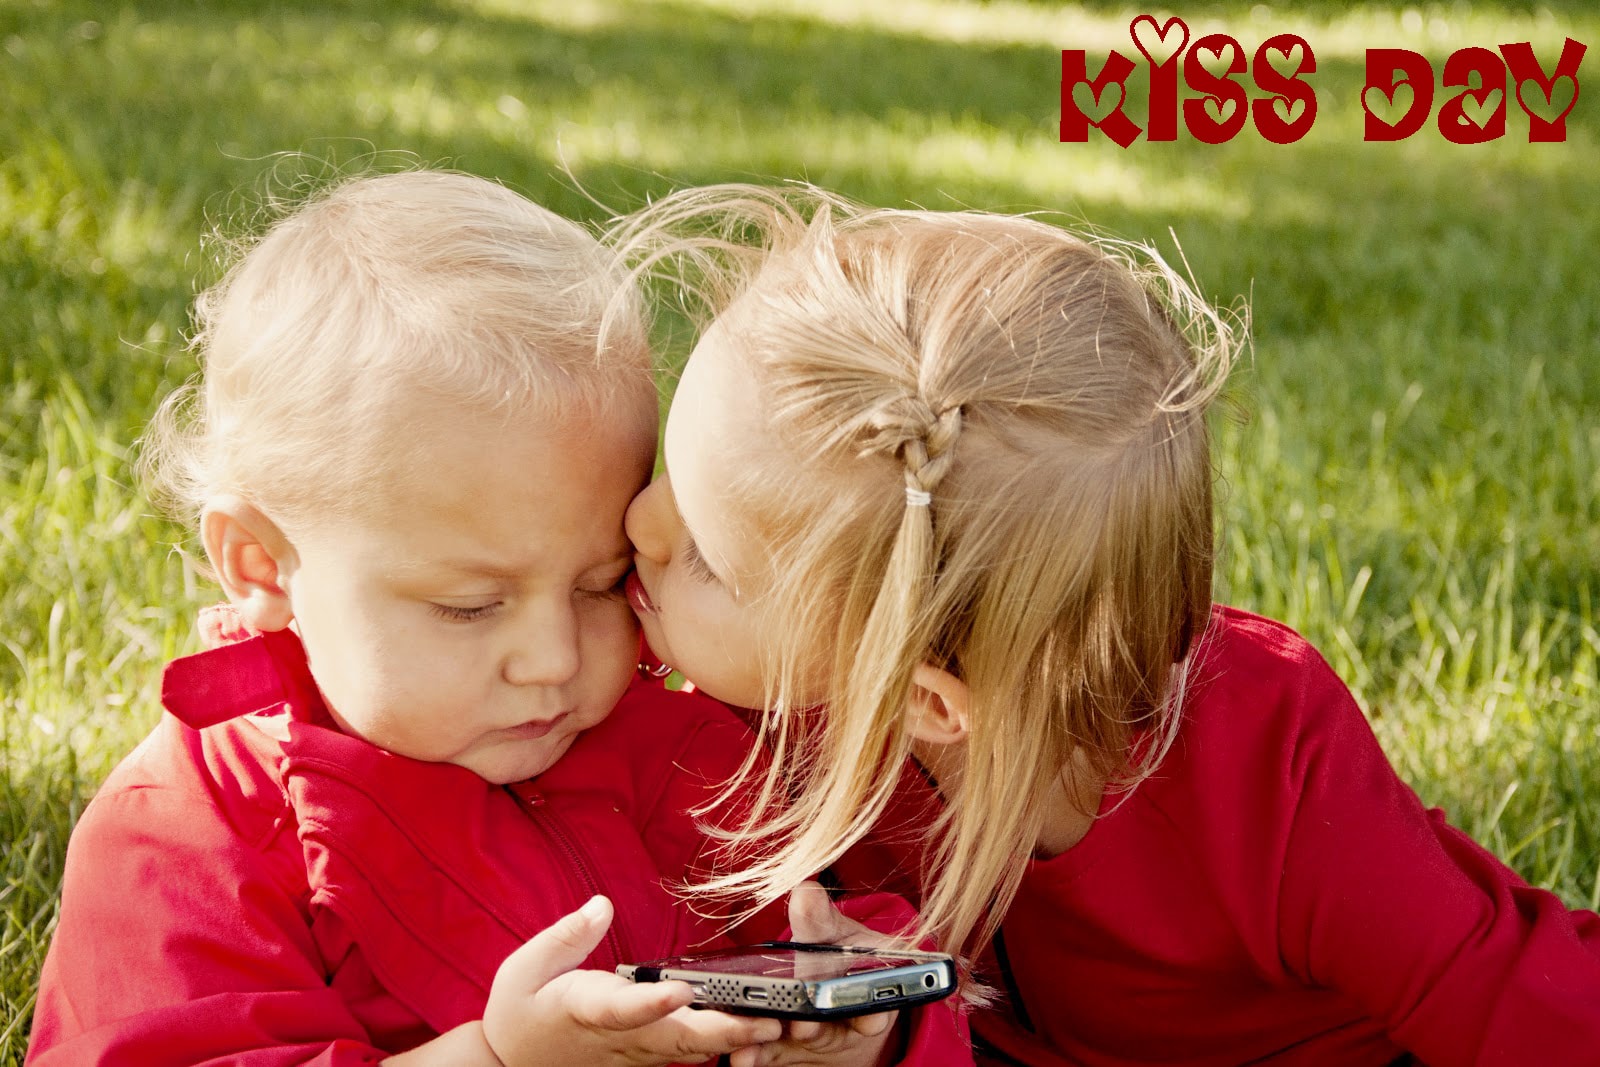 felice giorno del bacio bellissimi sfondi,bambino,bambino piccolo,amore,contento,giocare